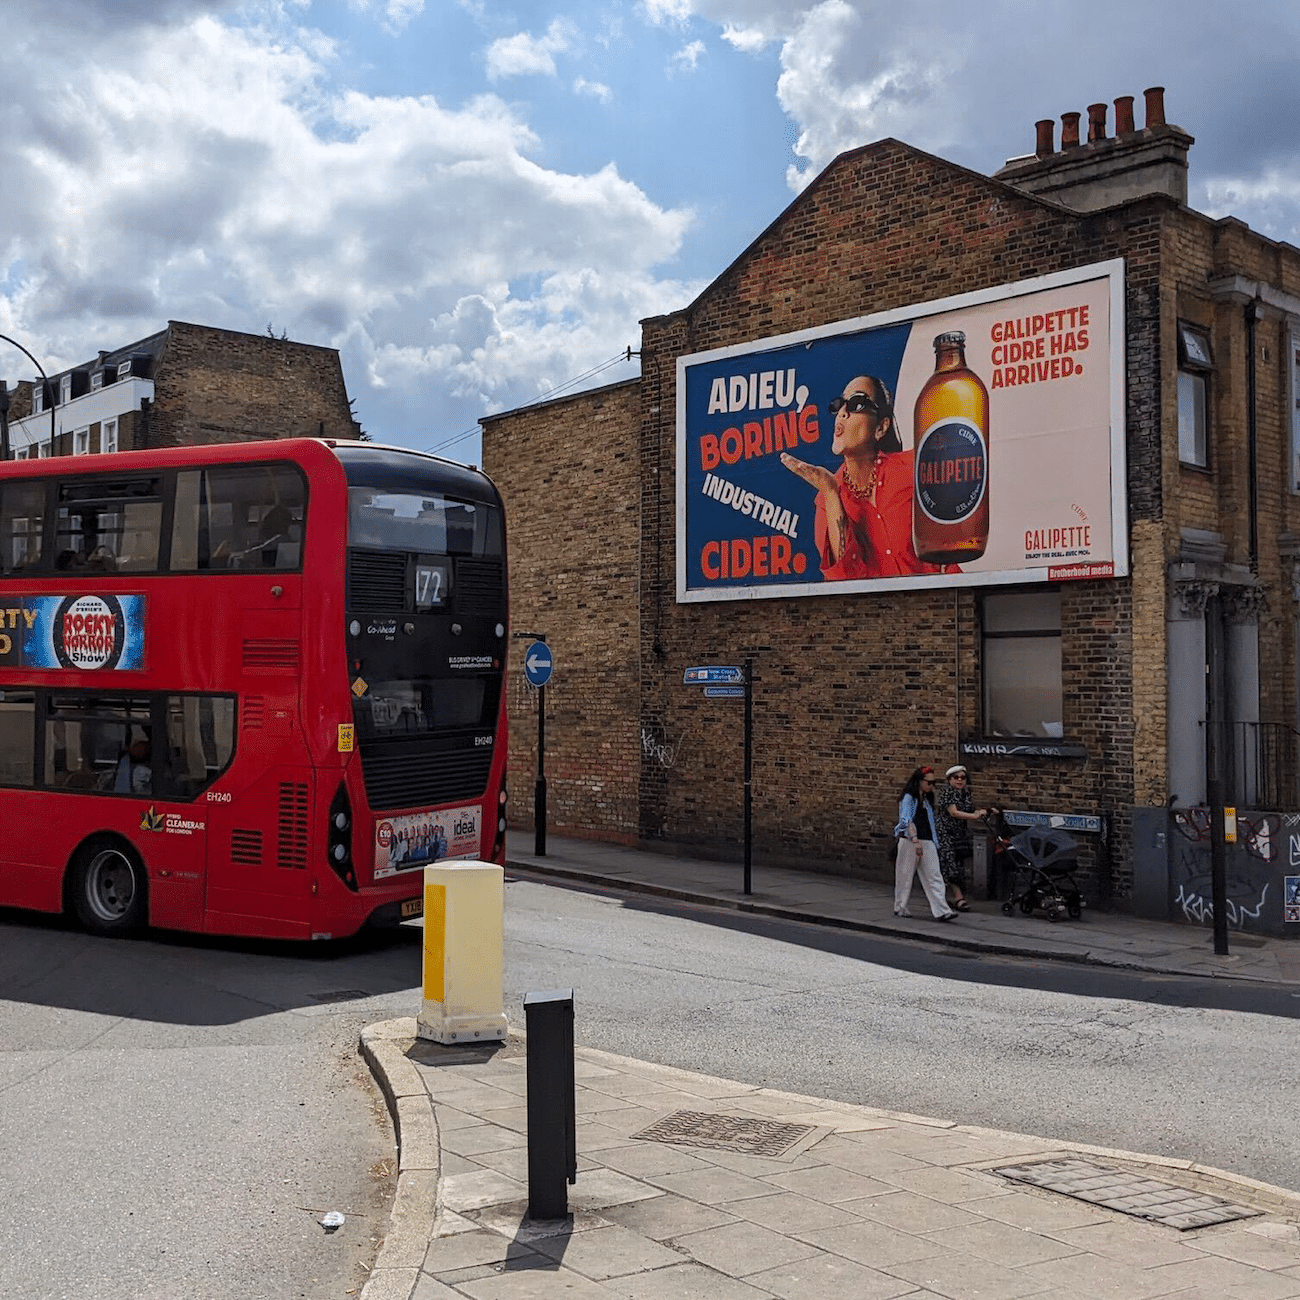 Plakatdesign für Cidre von Galipette und Kobra Agency, Plakat an Wand, daneben roter Bus in London, Custom Font, Bild von brauner Flasche und Frau, Adieu, boring industrial cider